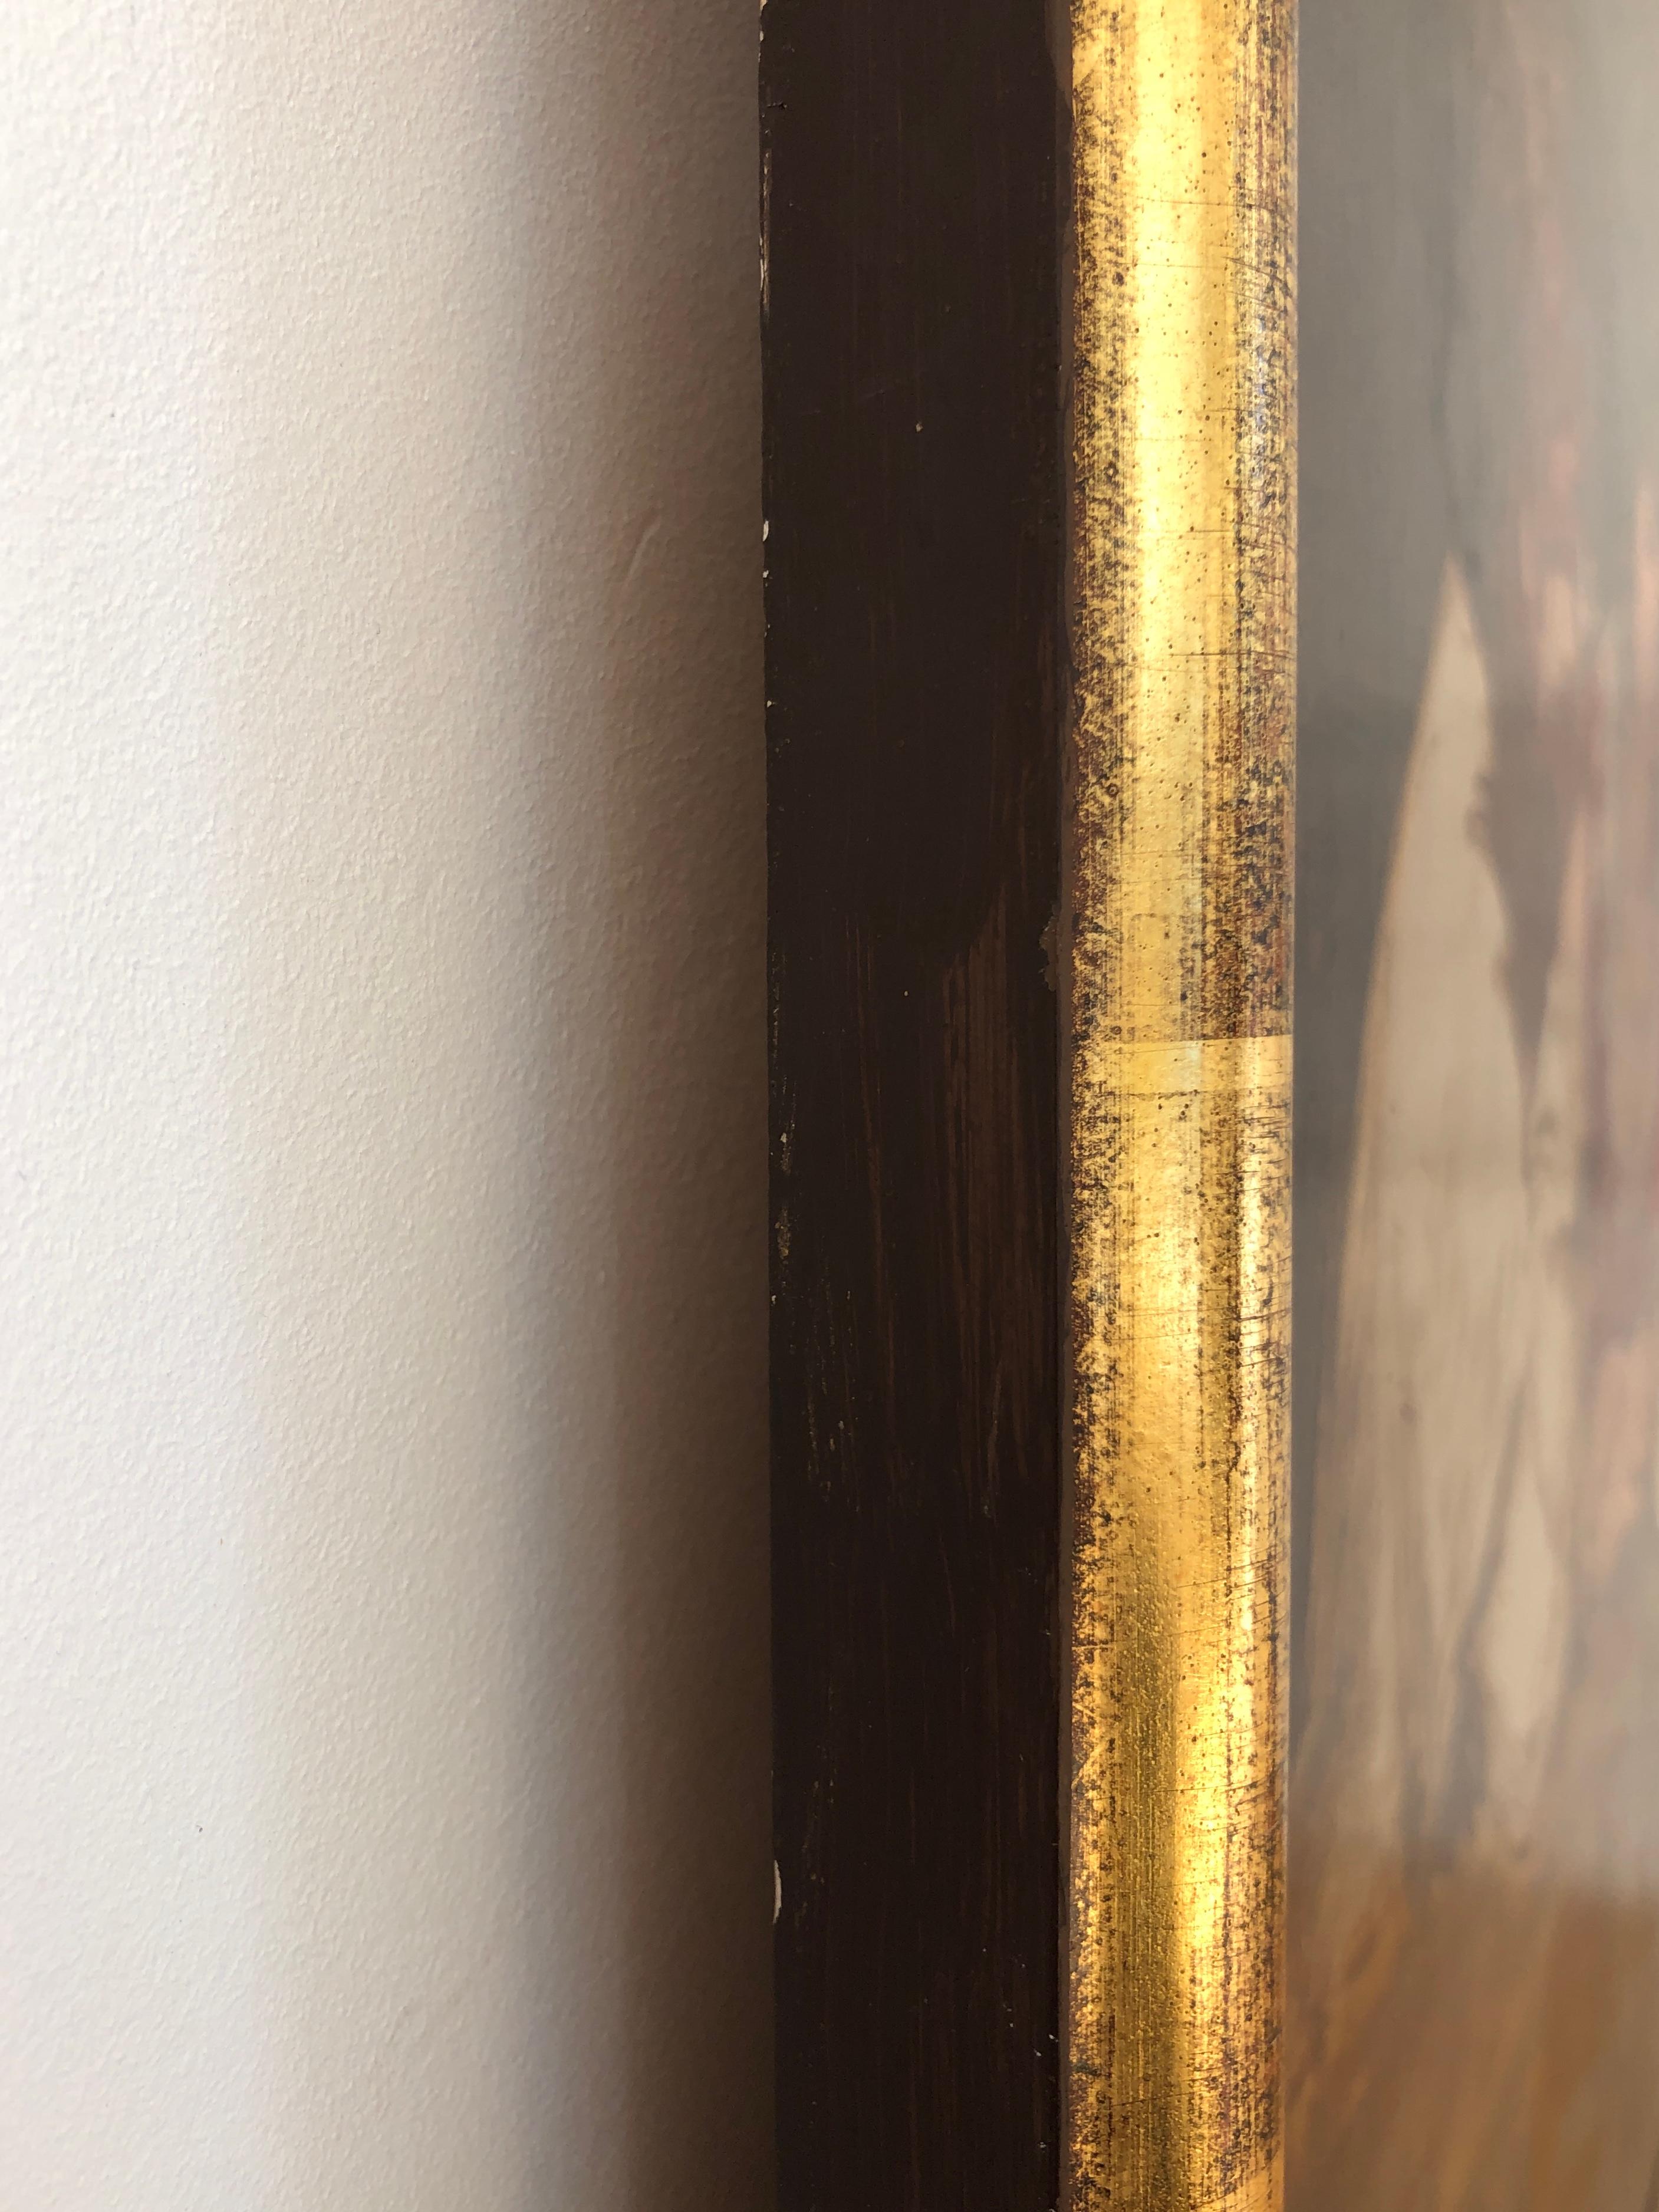 Work on canvas
Golden wooden frame
83 x 101.5 x 3.5 cm